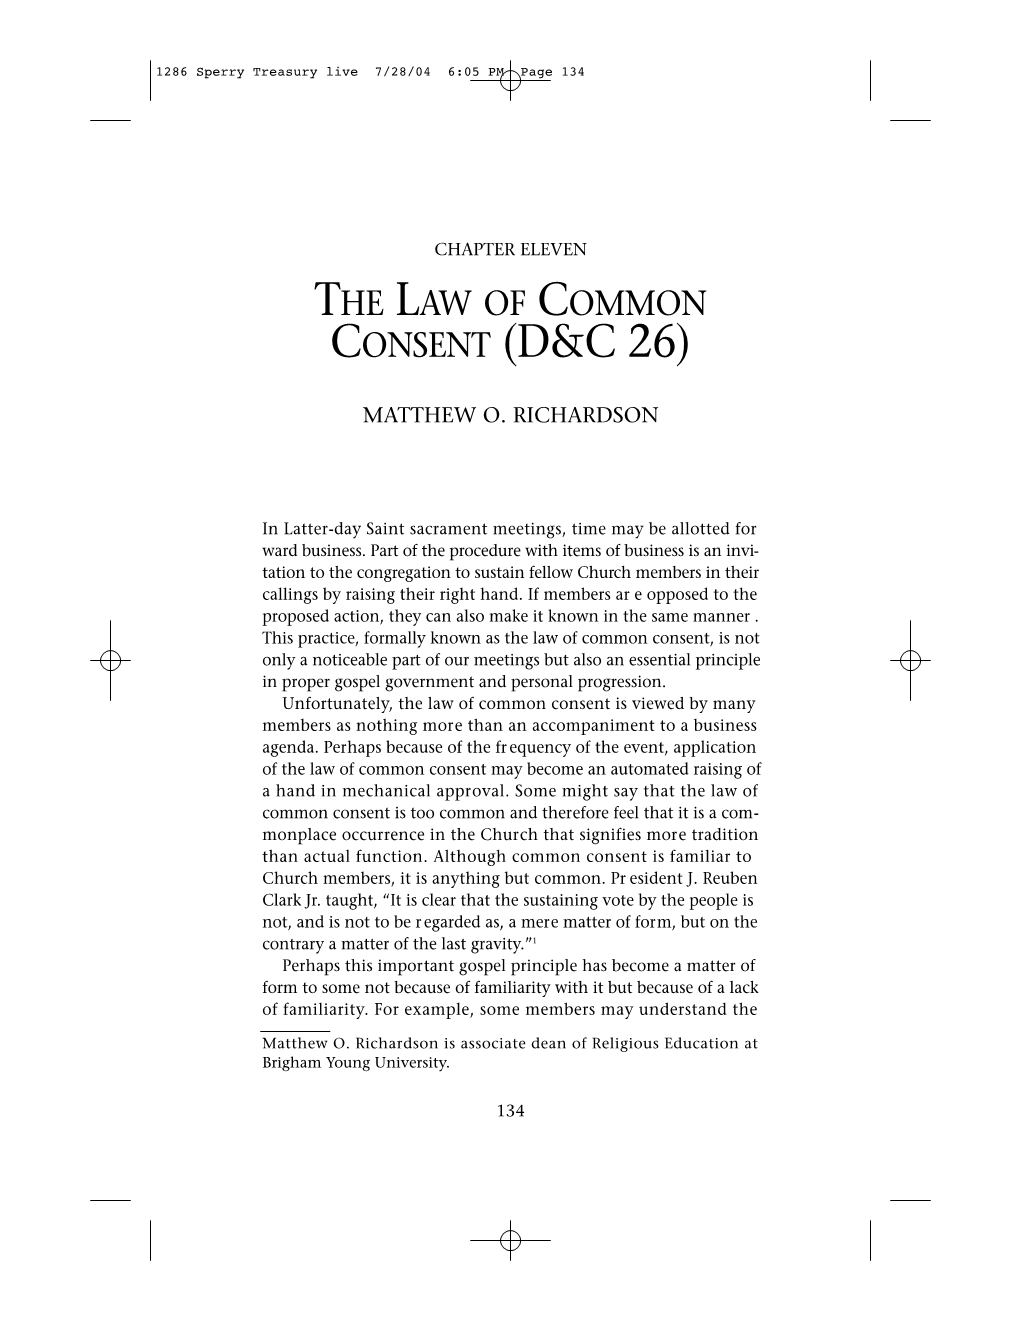 Consent (D&C�26)